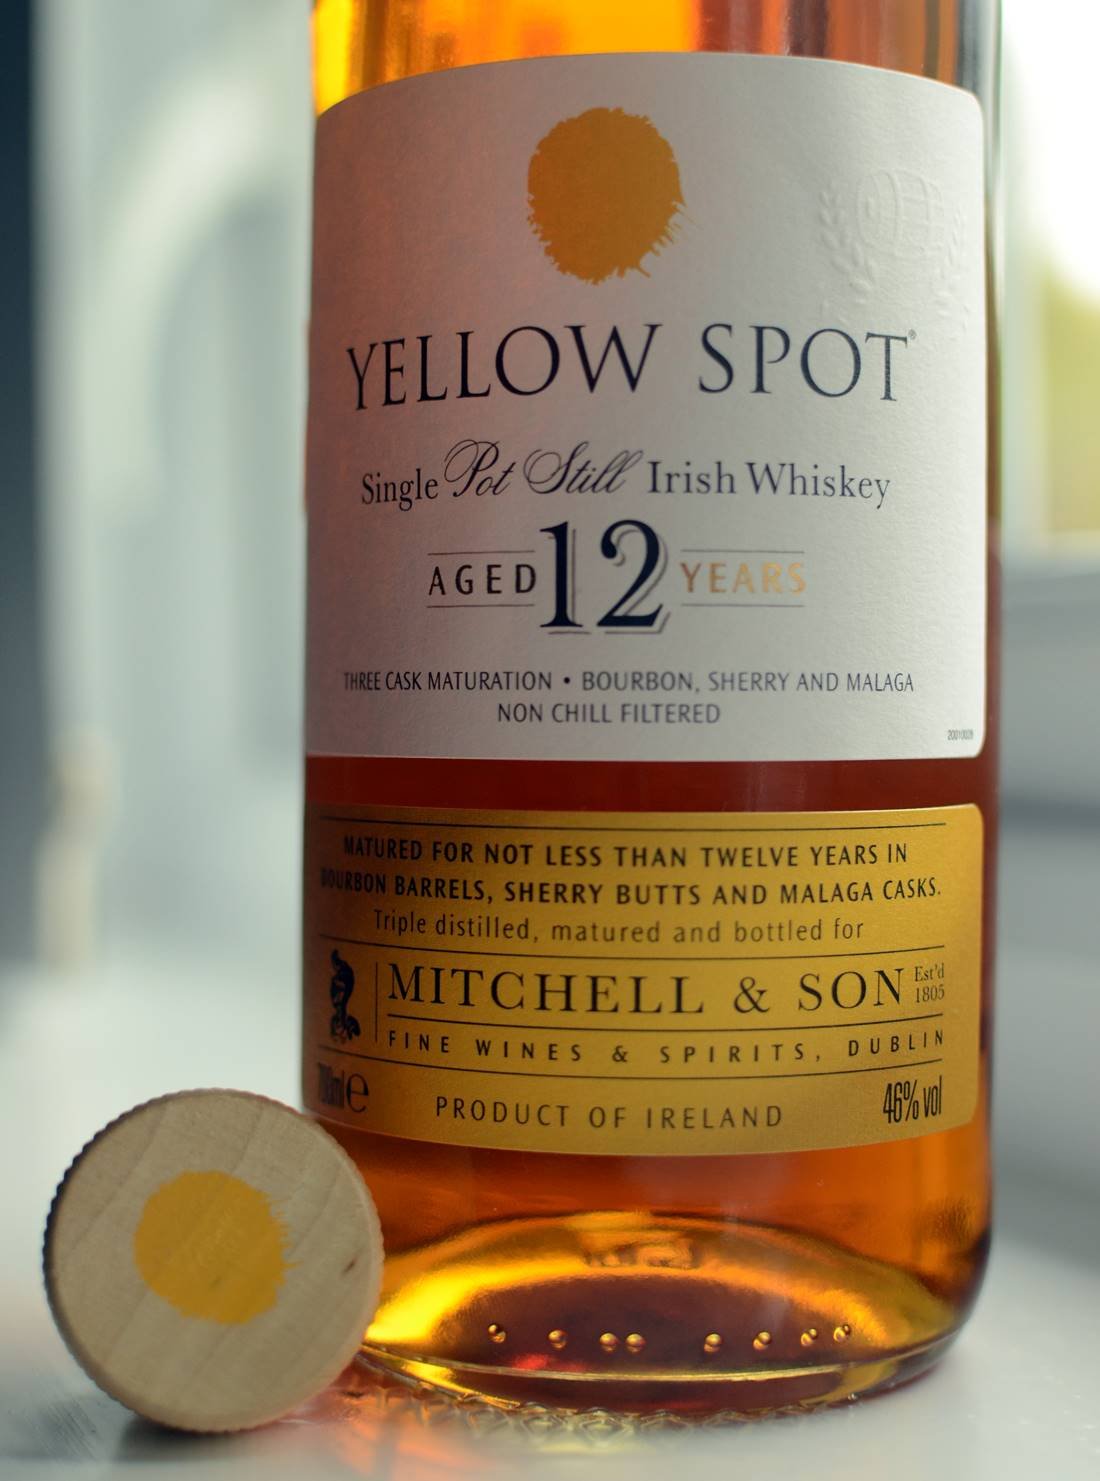 Yellow Spot 12yo Single Pot Still Irish Whiskey — DRAMFACE